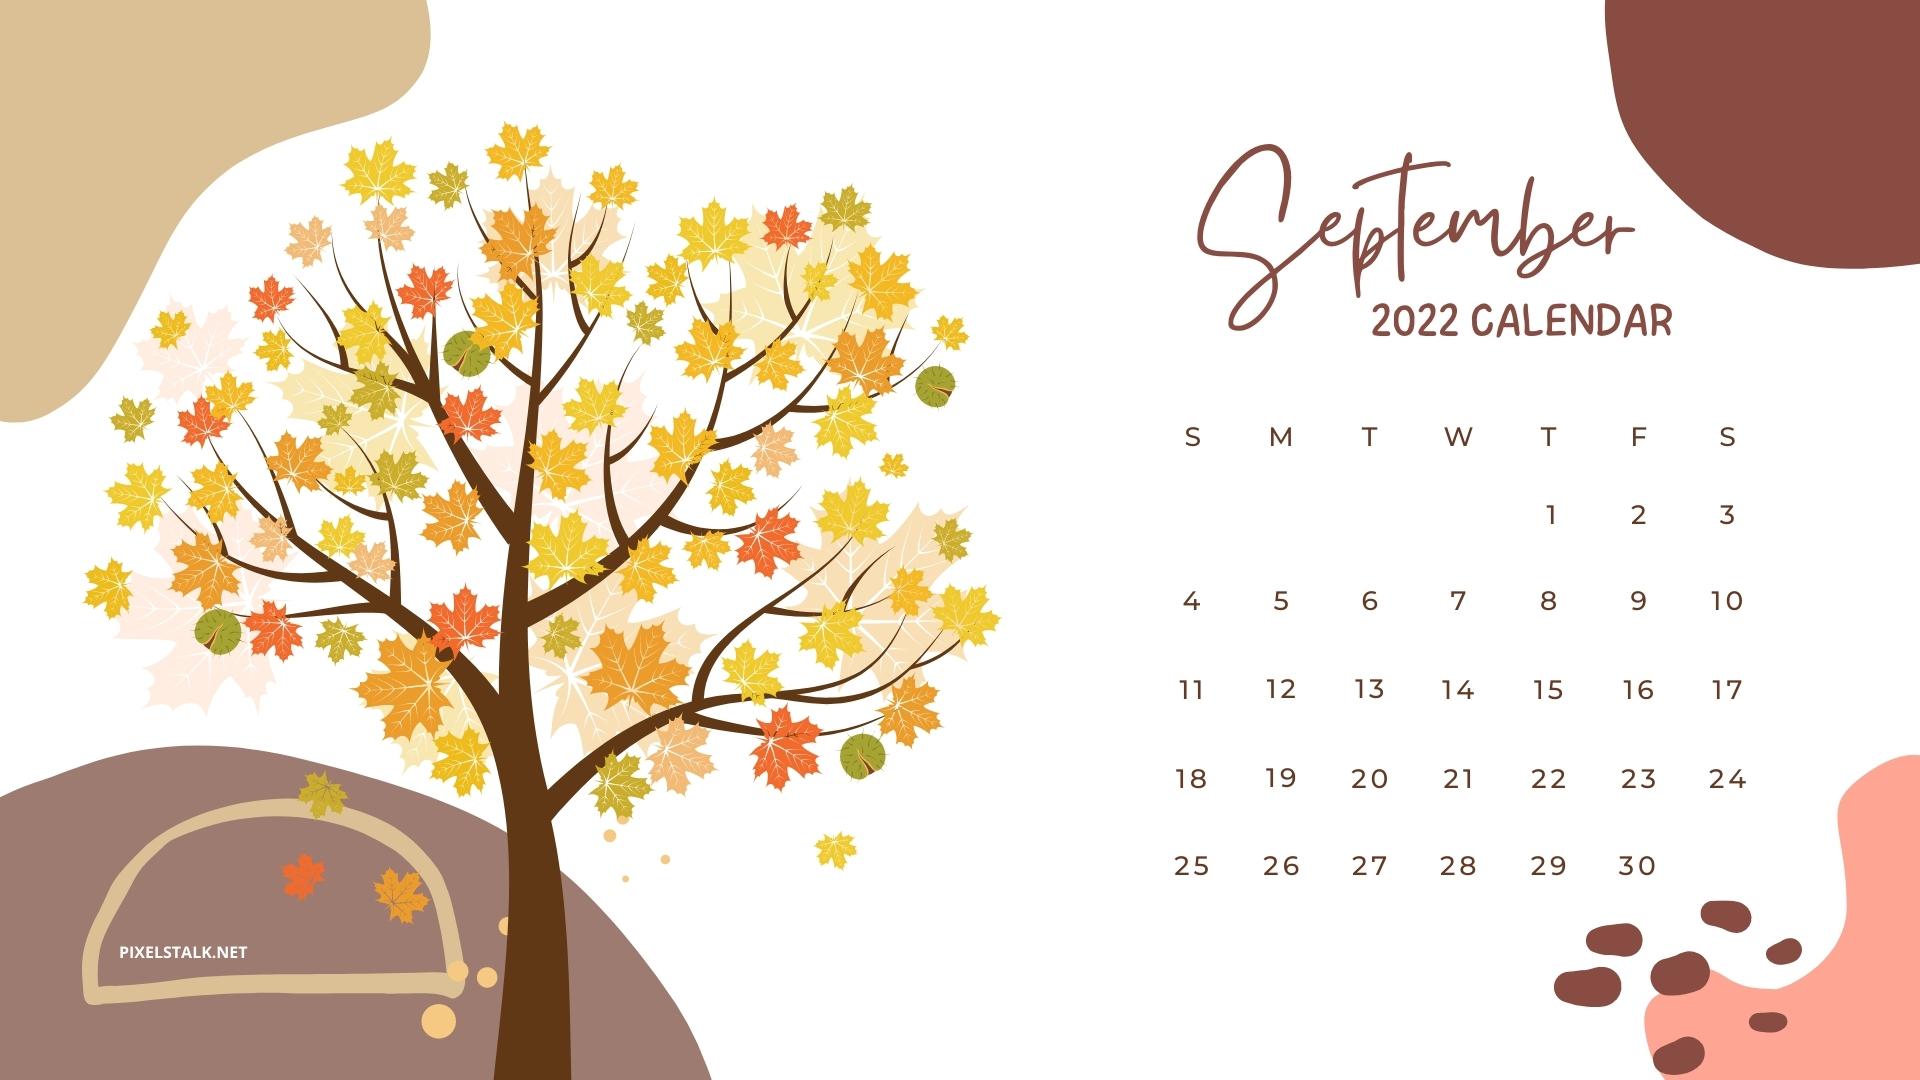 September 2022 Calendar Wallpaper HD Download 1920x1080